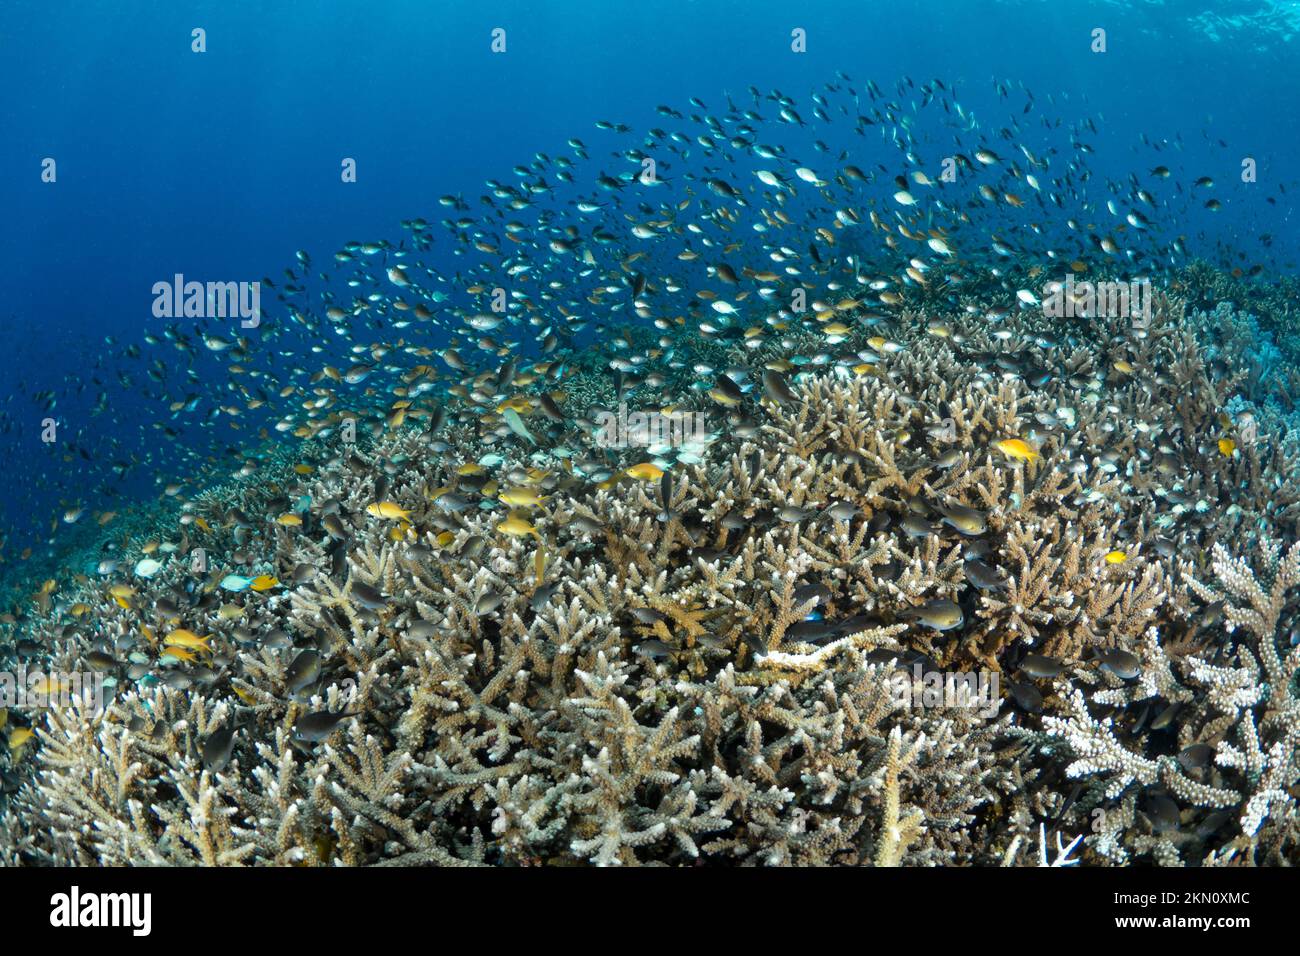 Biodiversité ultime de l'Indo pacific avec scolarisation des poissons tropicaux au-dessus d'un écosystème de récif corallien abondant et sain. Banque D'Images